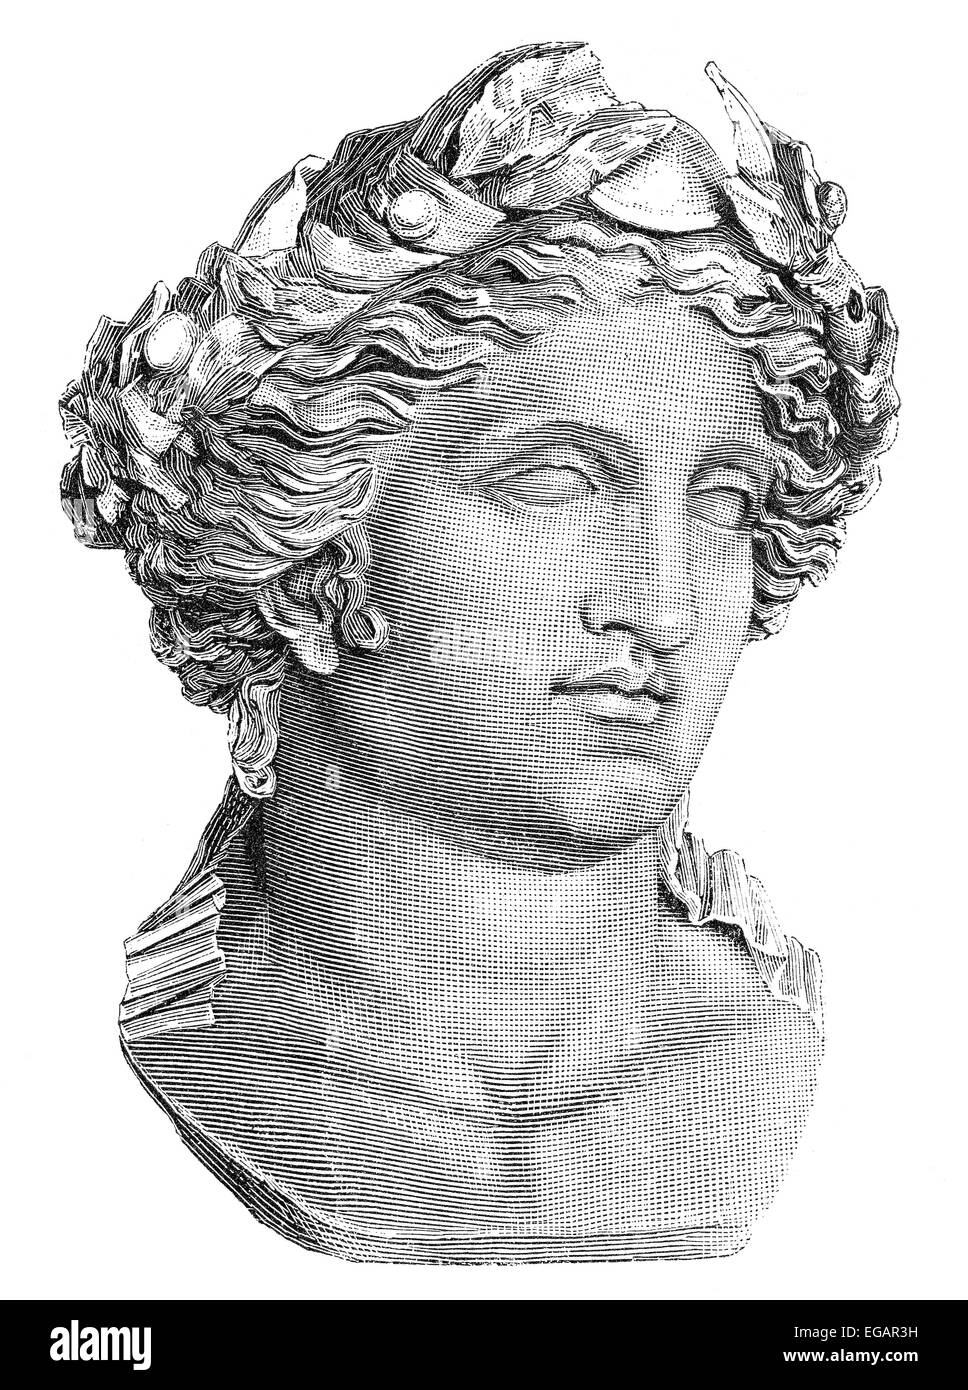 Nero oder Nero Claudius Caesar Augustus Germanicus, 37-68, römischer Kaiser von 54 bis 68, Stockfoto